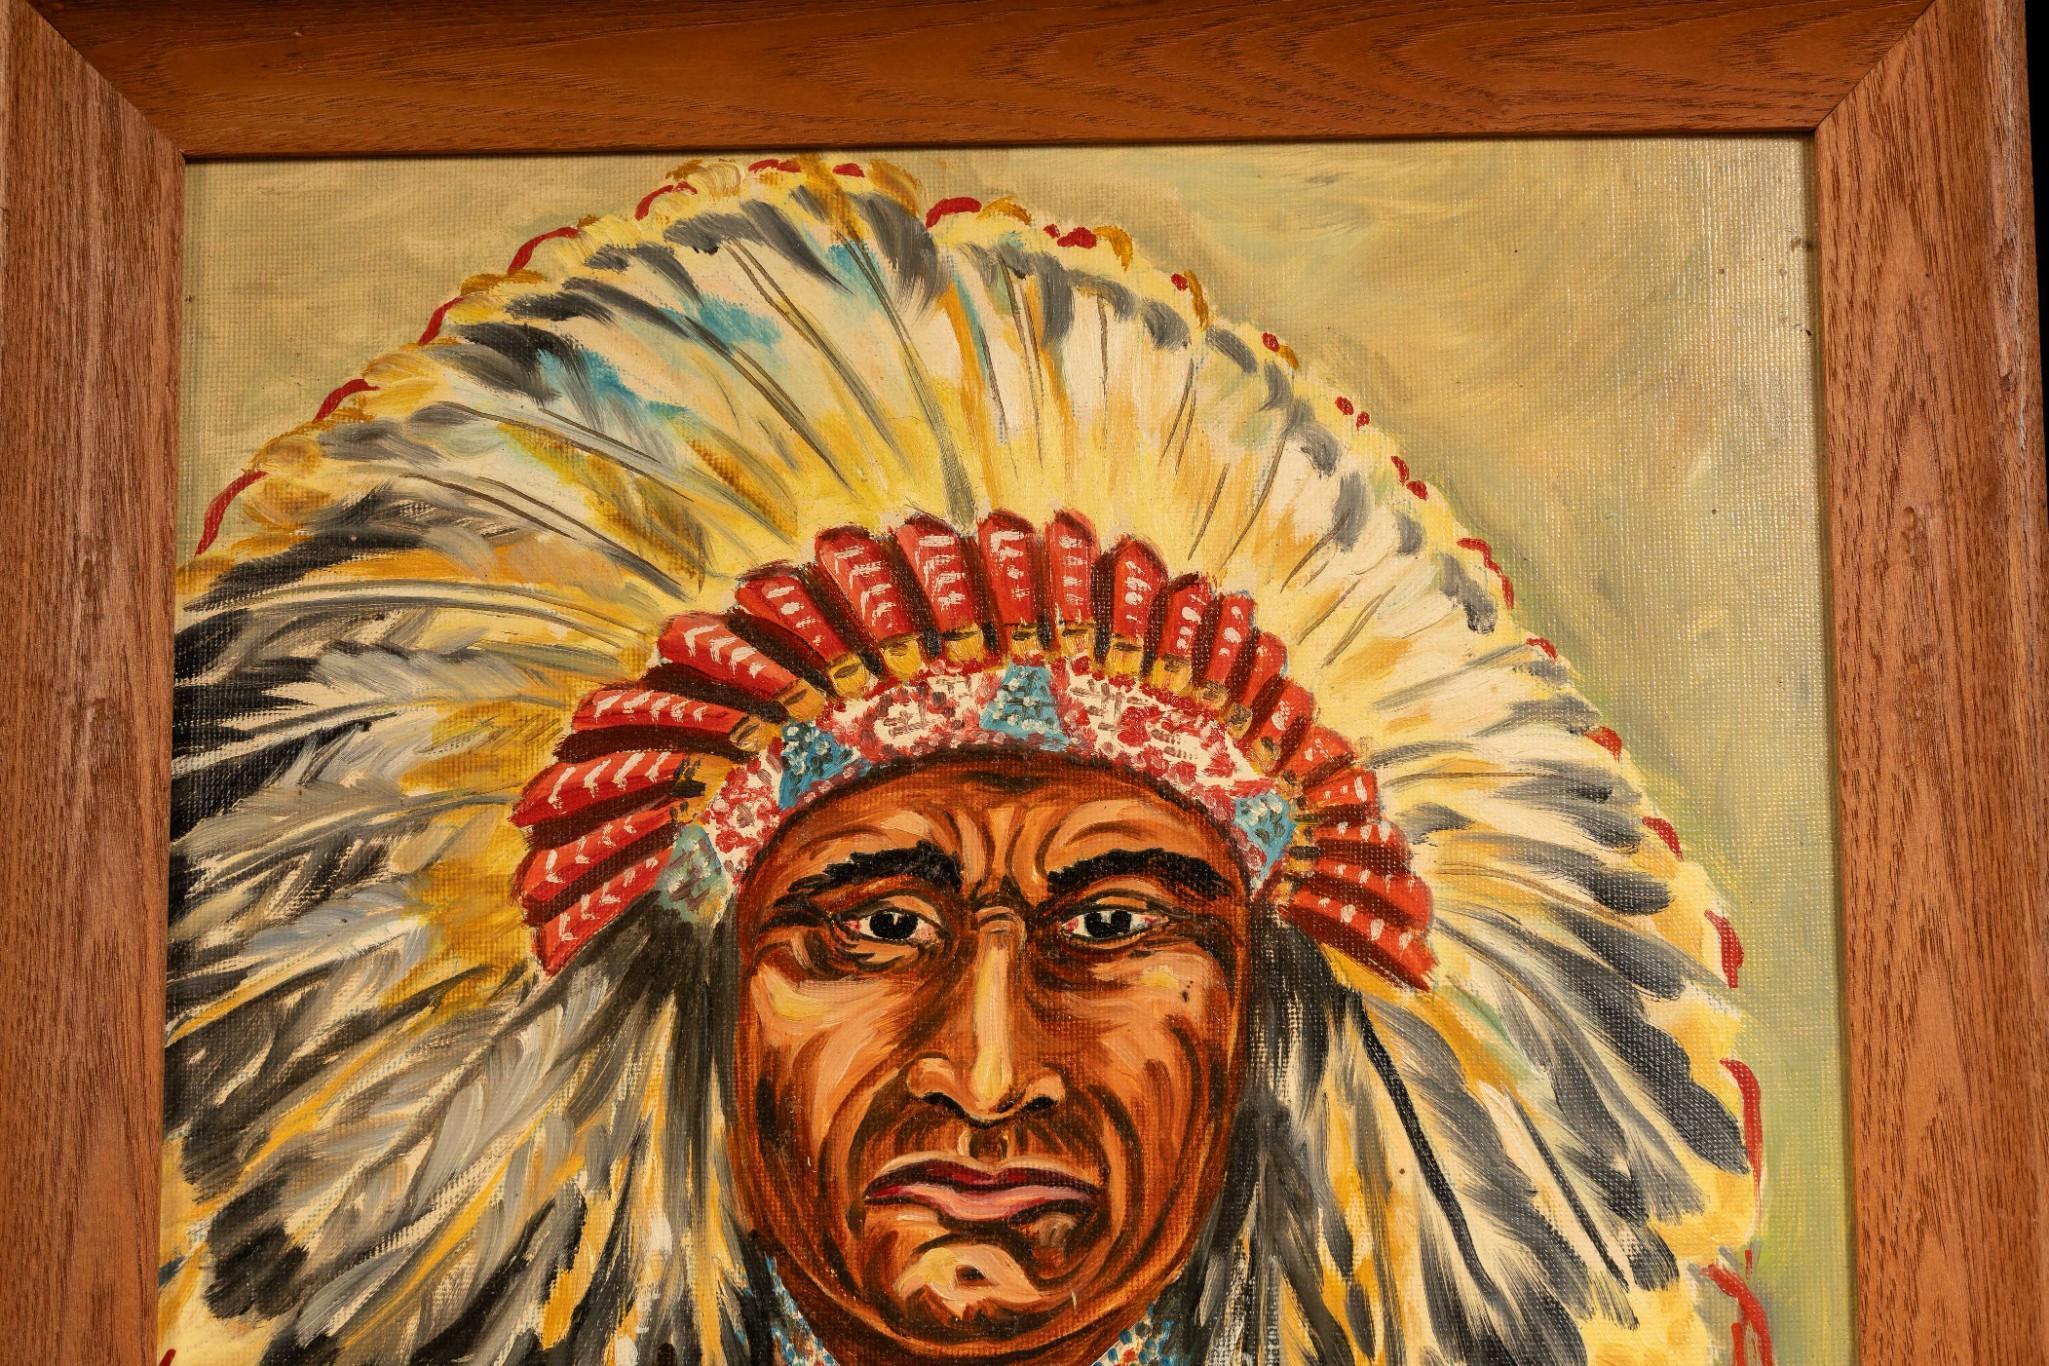 Chief Joseph, Nez Perce Tribe 1840-1904, Oil on Board